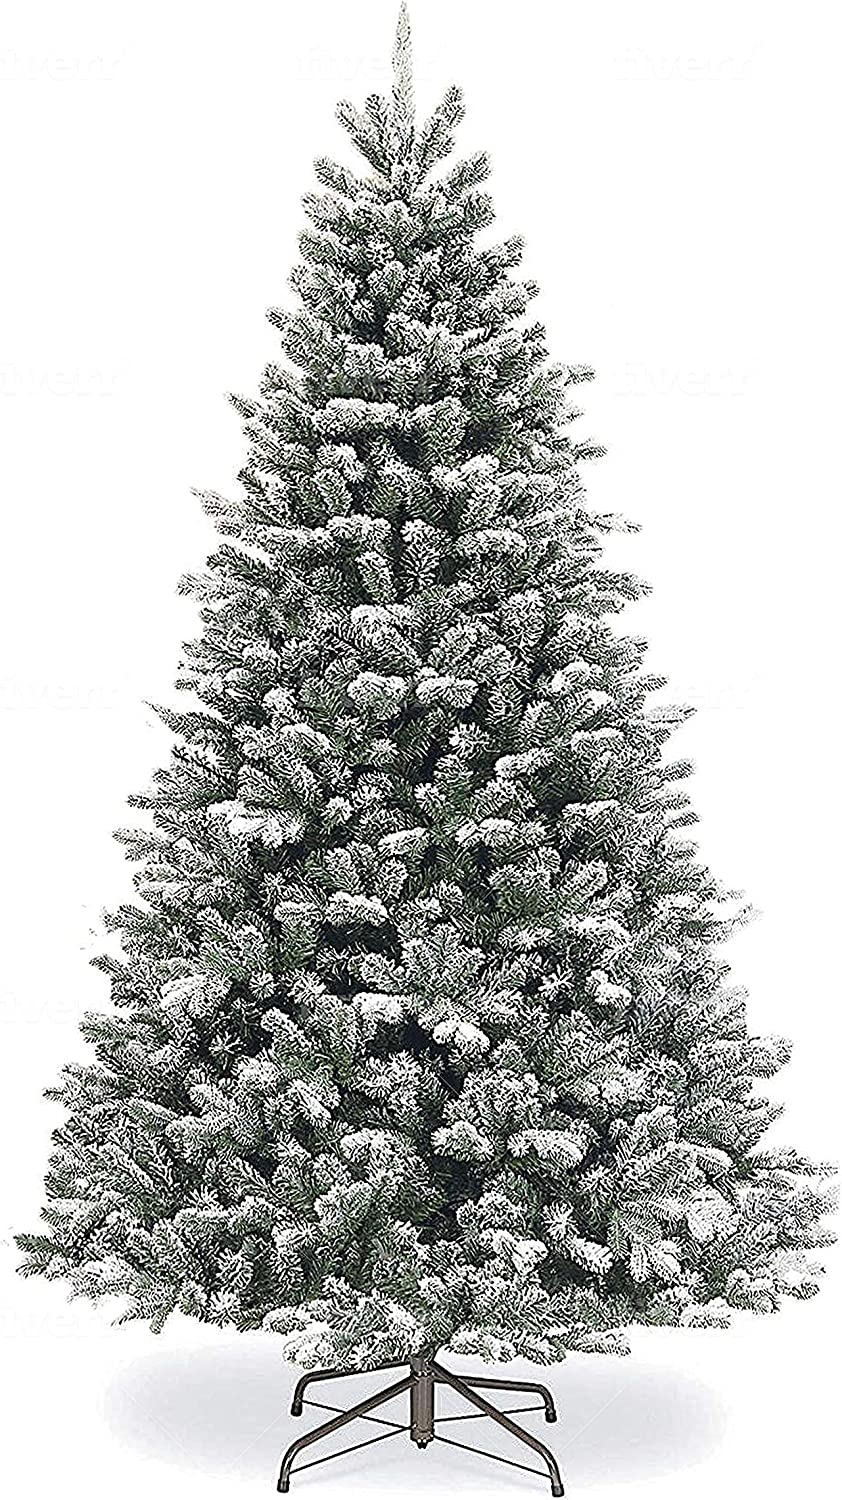  10. SPARKS Flocked Christmas Tree 